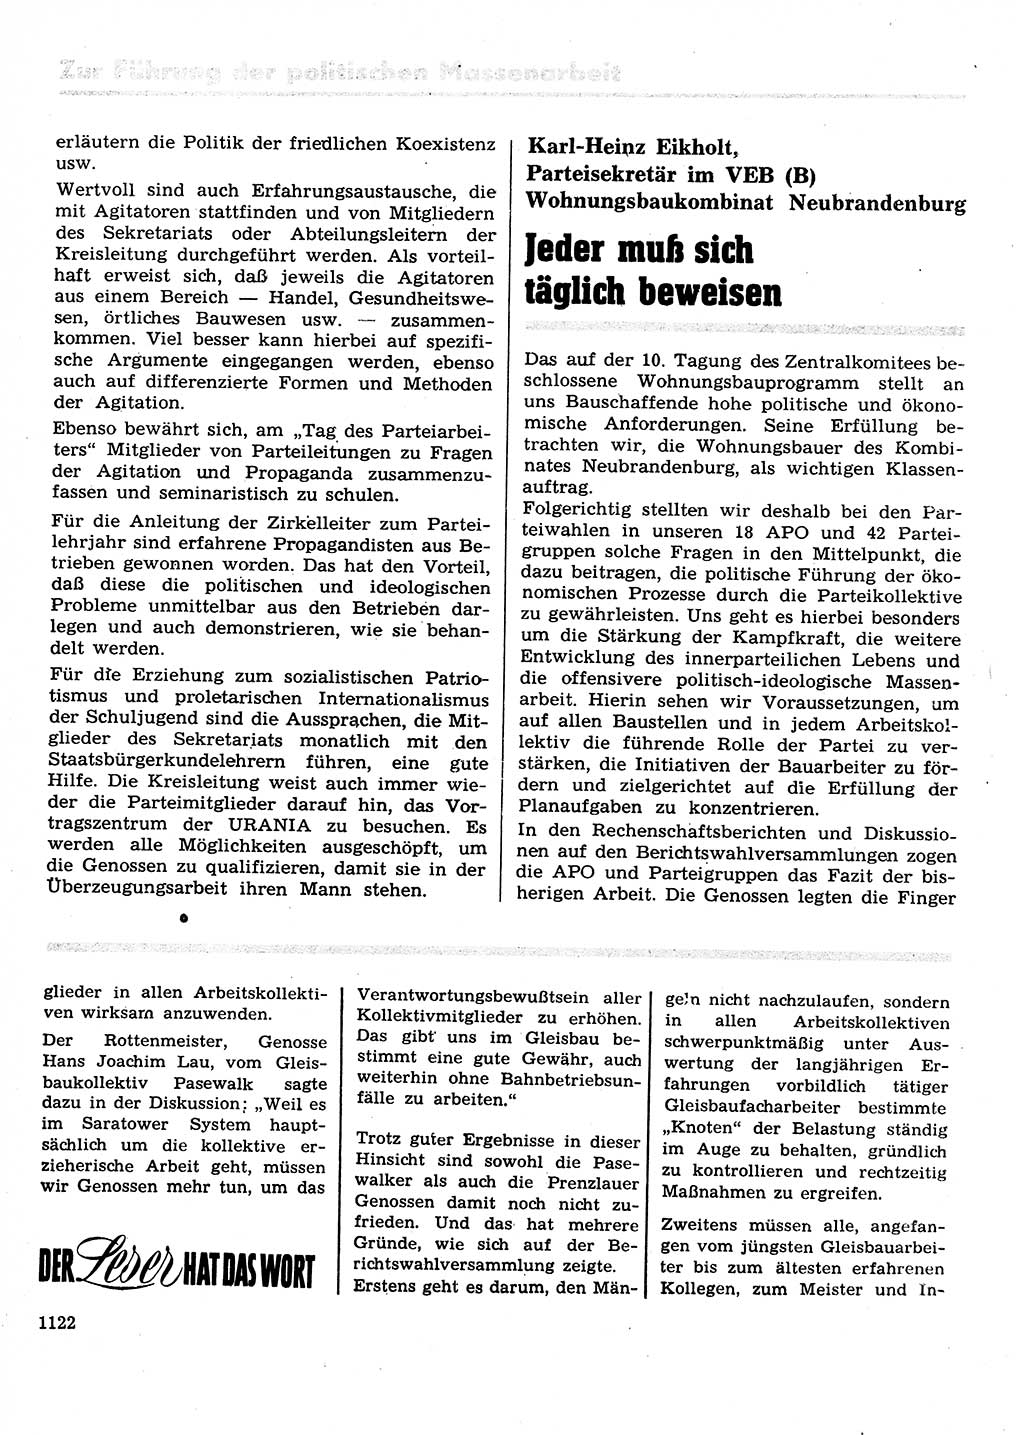 Neuer Weg (NW), Organ des Zentralkomitees (ZK) der SED (Sozialistische Einheitspartei Deutschlands) für Fragen des Parteilebens, 28. Jahrgang [Deutsche Demokratische Republik (DDR)] 1973, Seite 1122 (NW ZK SED DDR 1973, S. 1122)